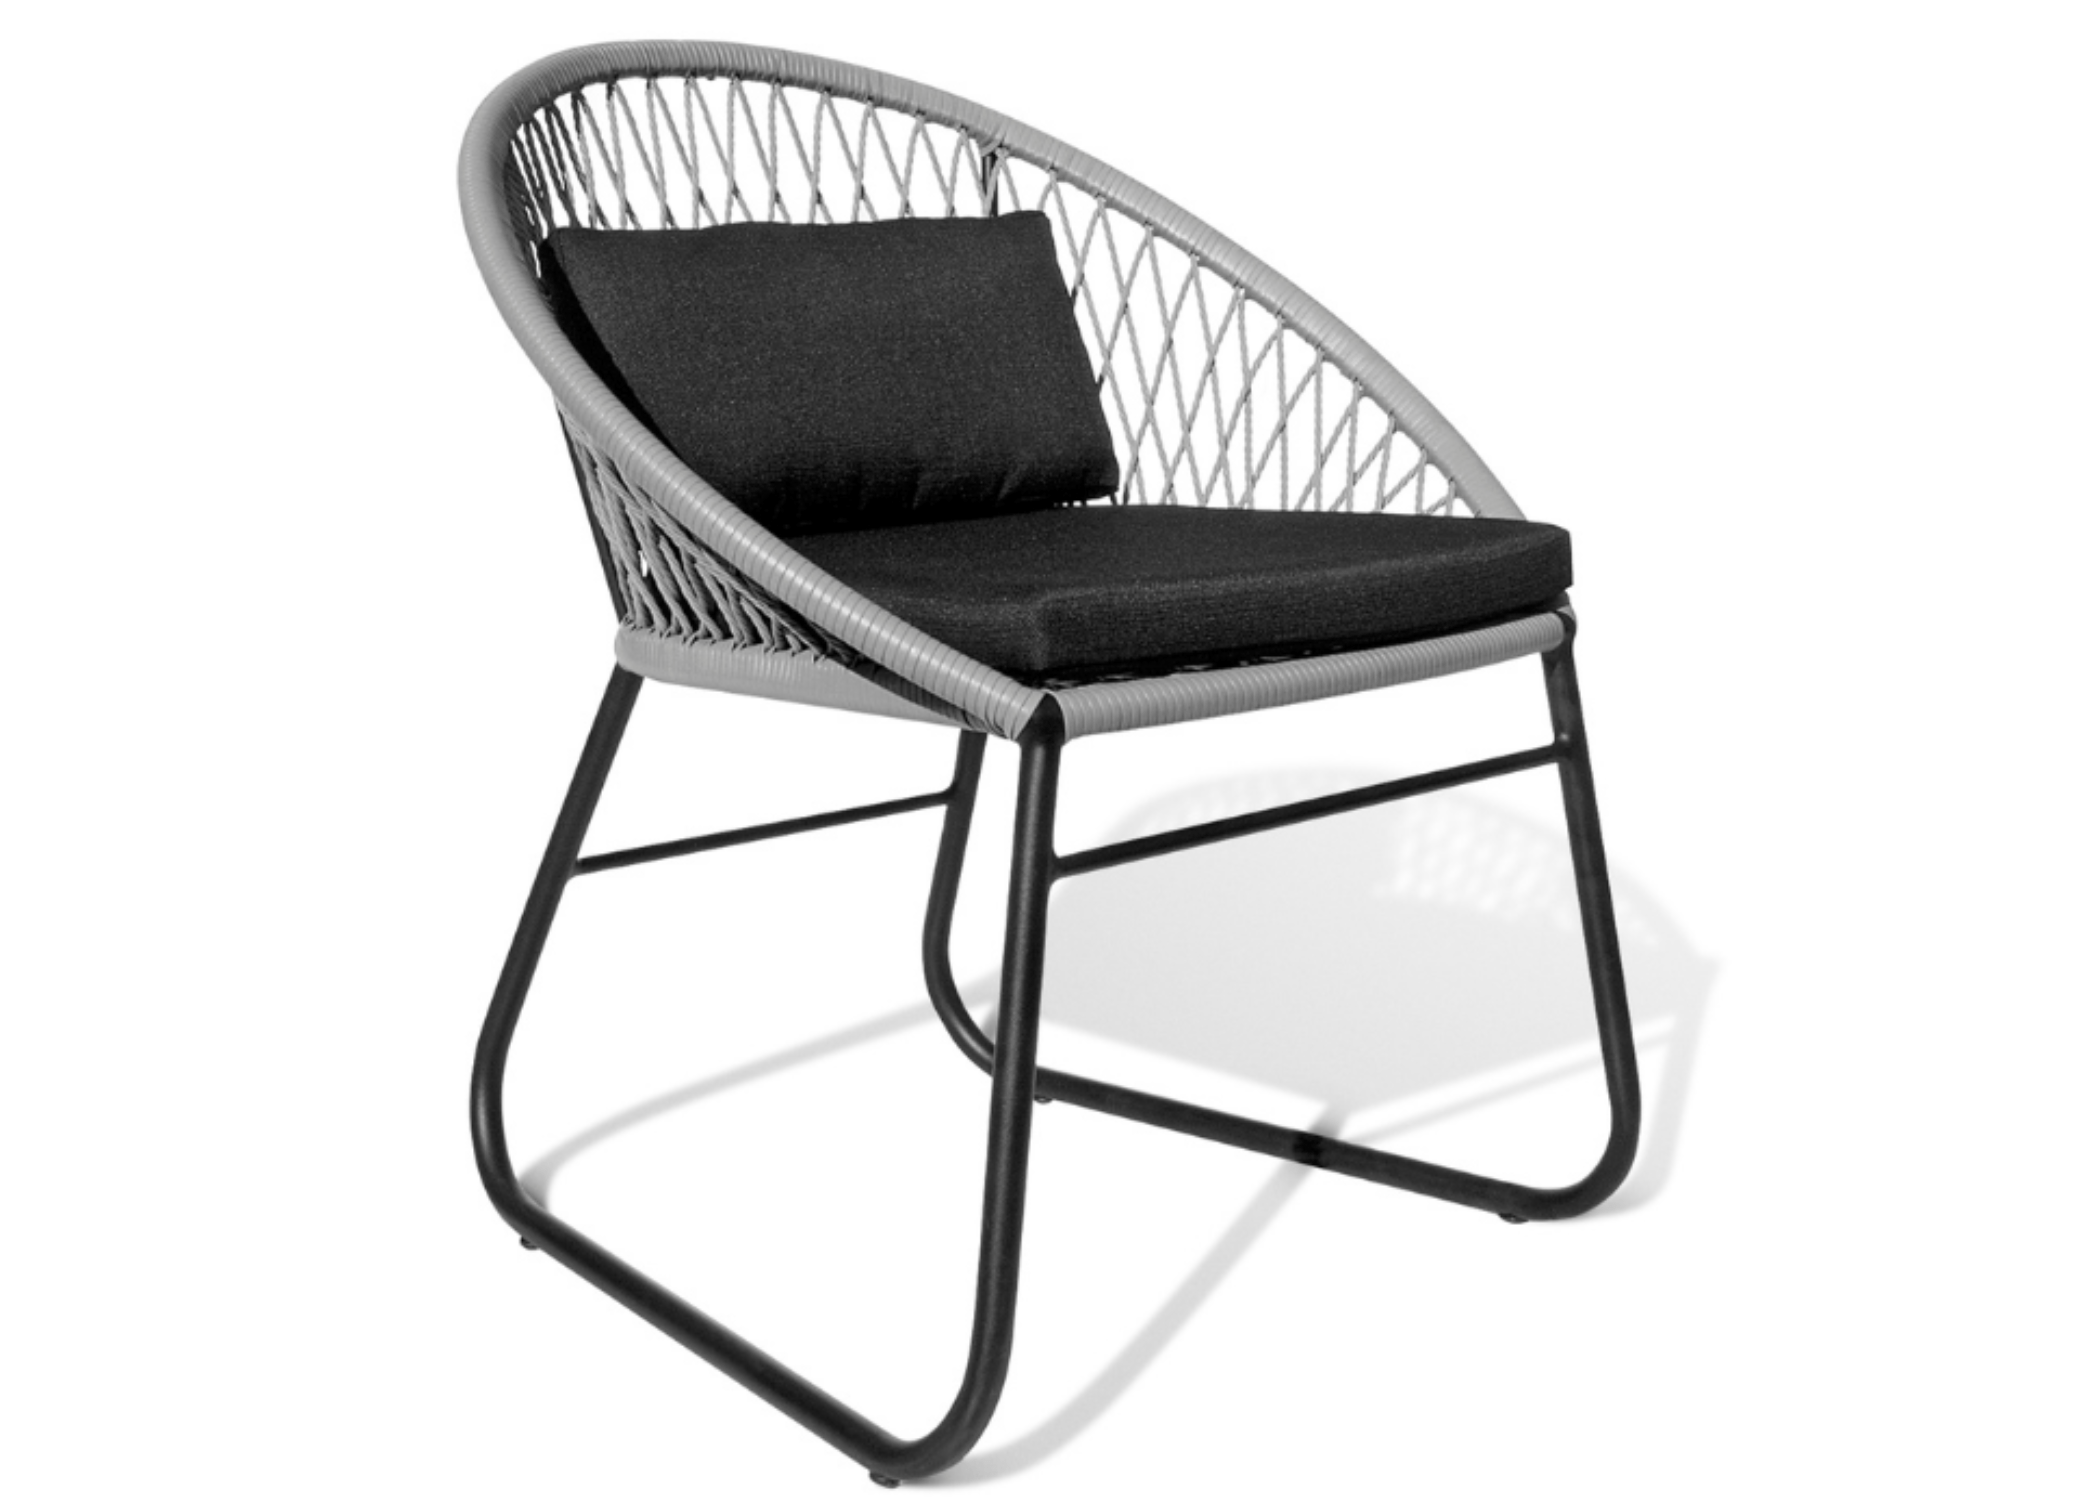 Cadeira Sossego em destaque, o complemento ideal para momentos ao ar livre.